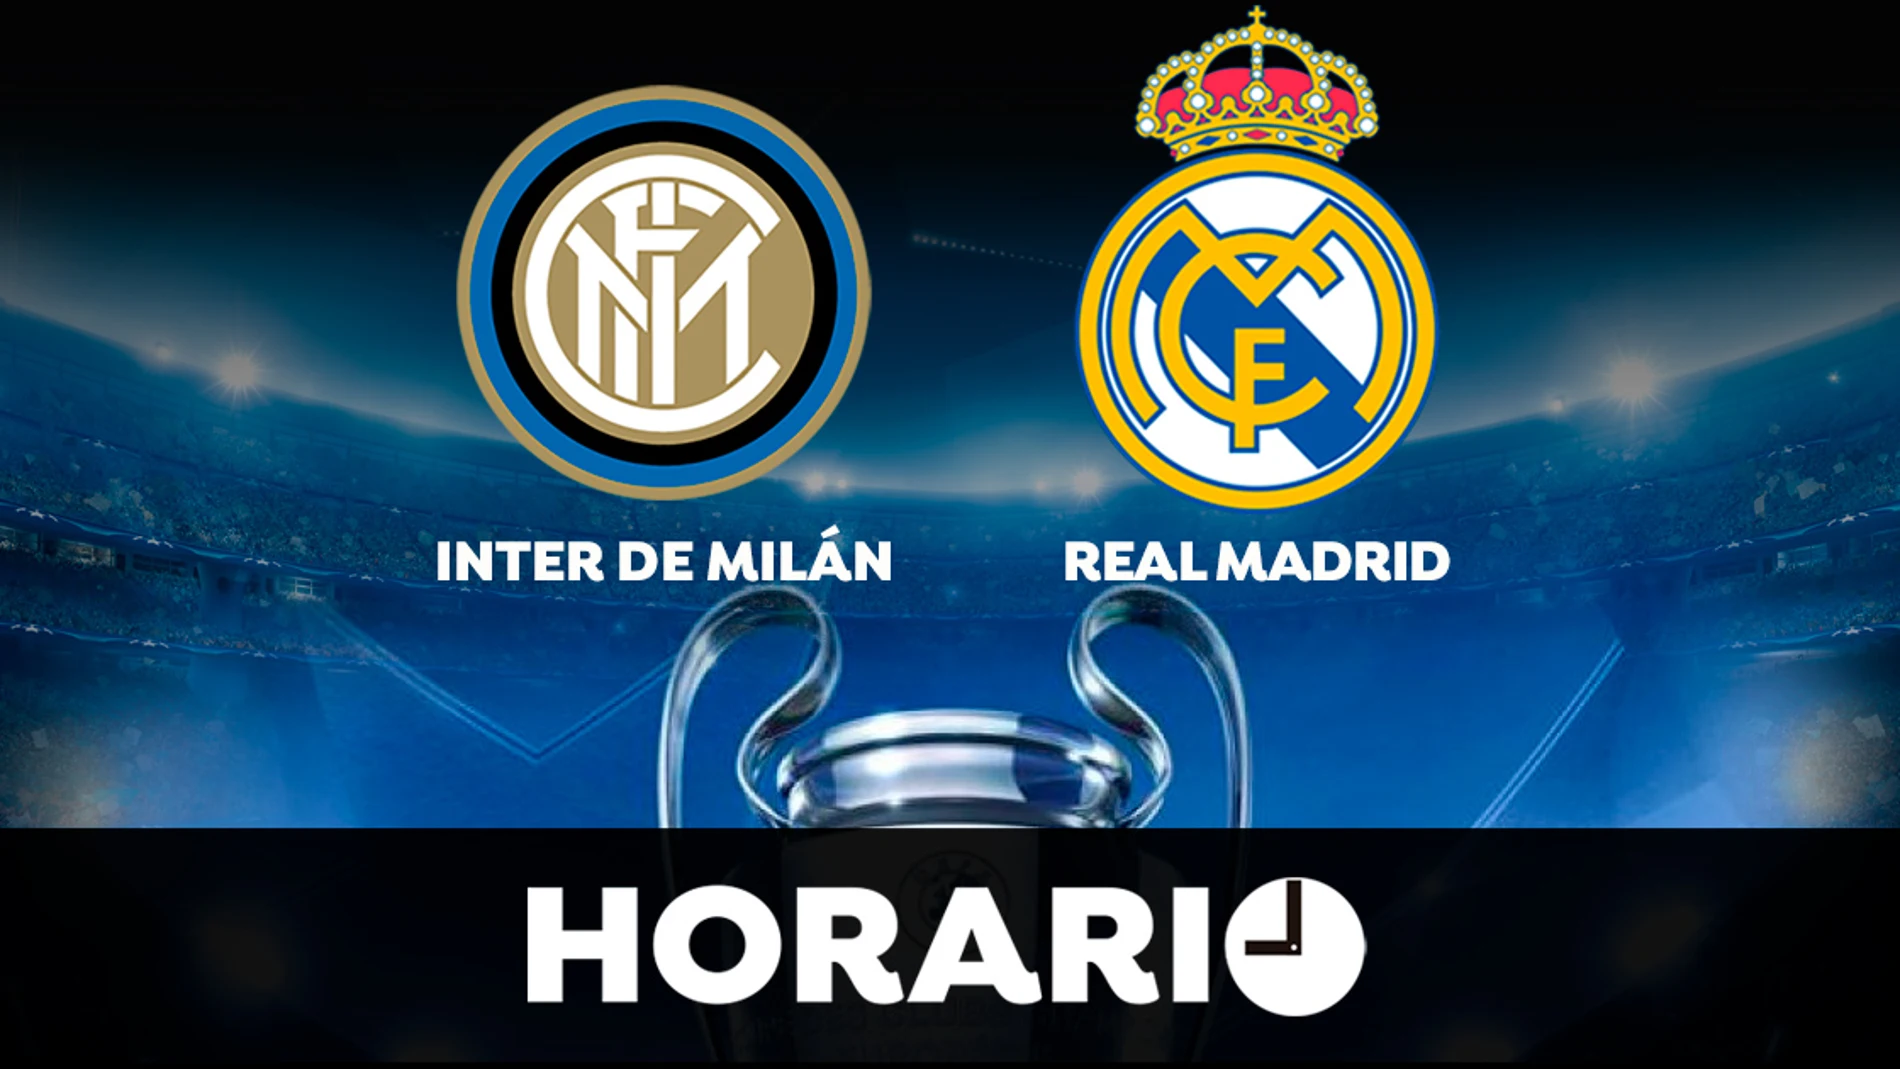 Inter de Milán - Real Madrid: Horario y dónde ver el partido de Champions League en directo 